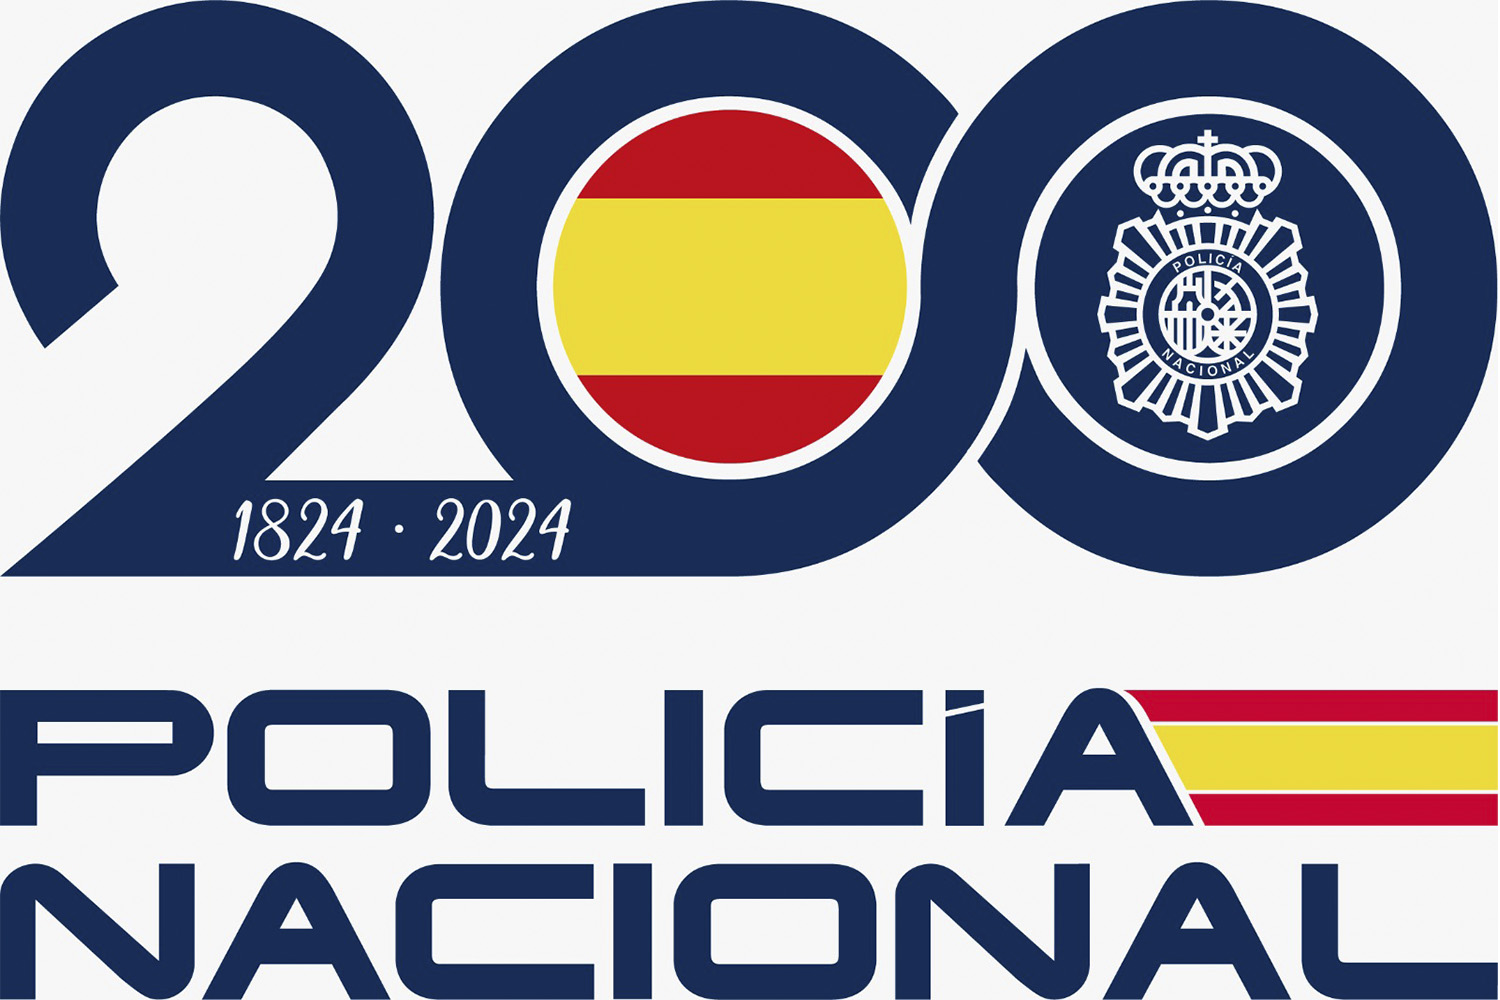 Logotipo bicenternario de la Policía Nacional.